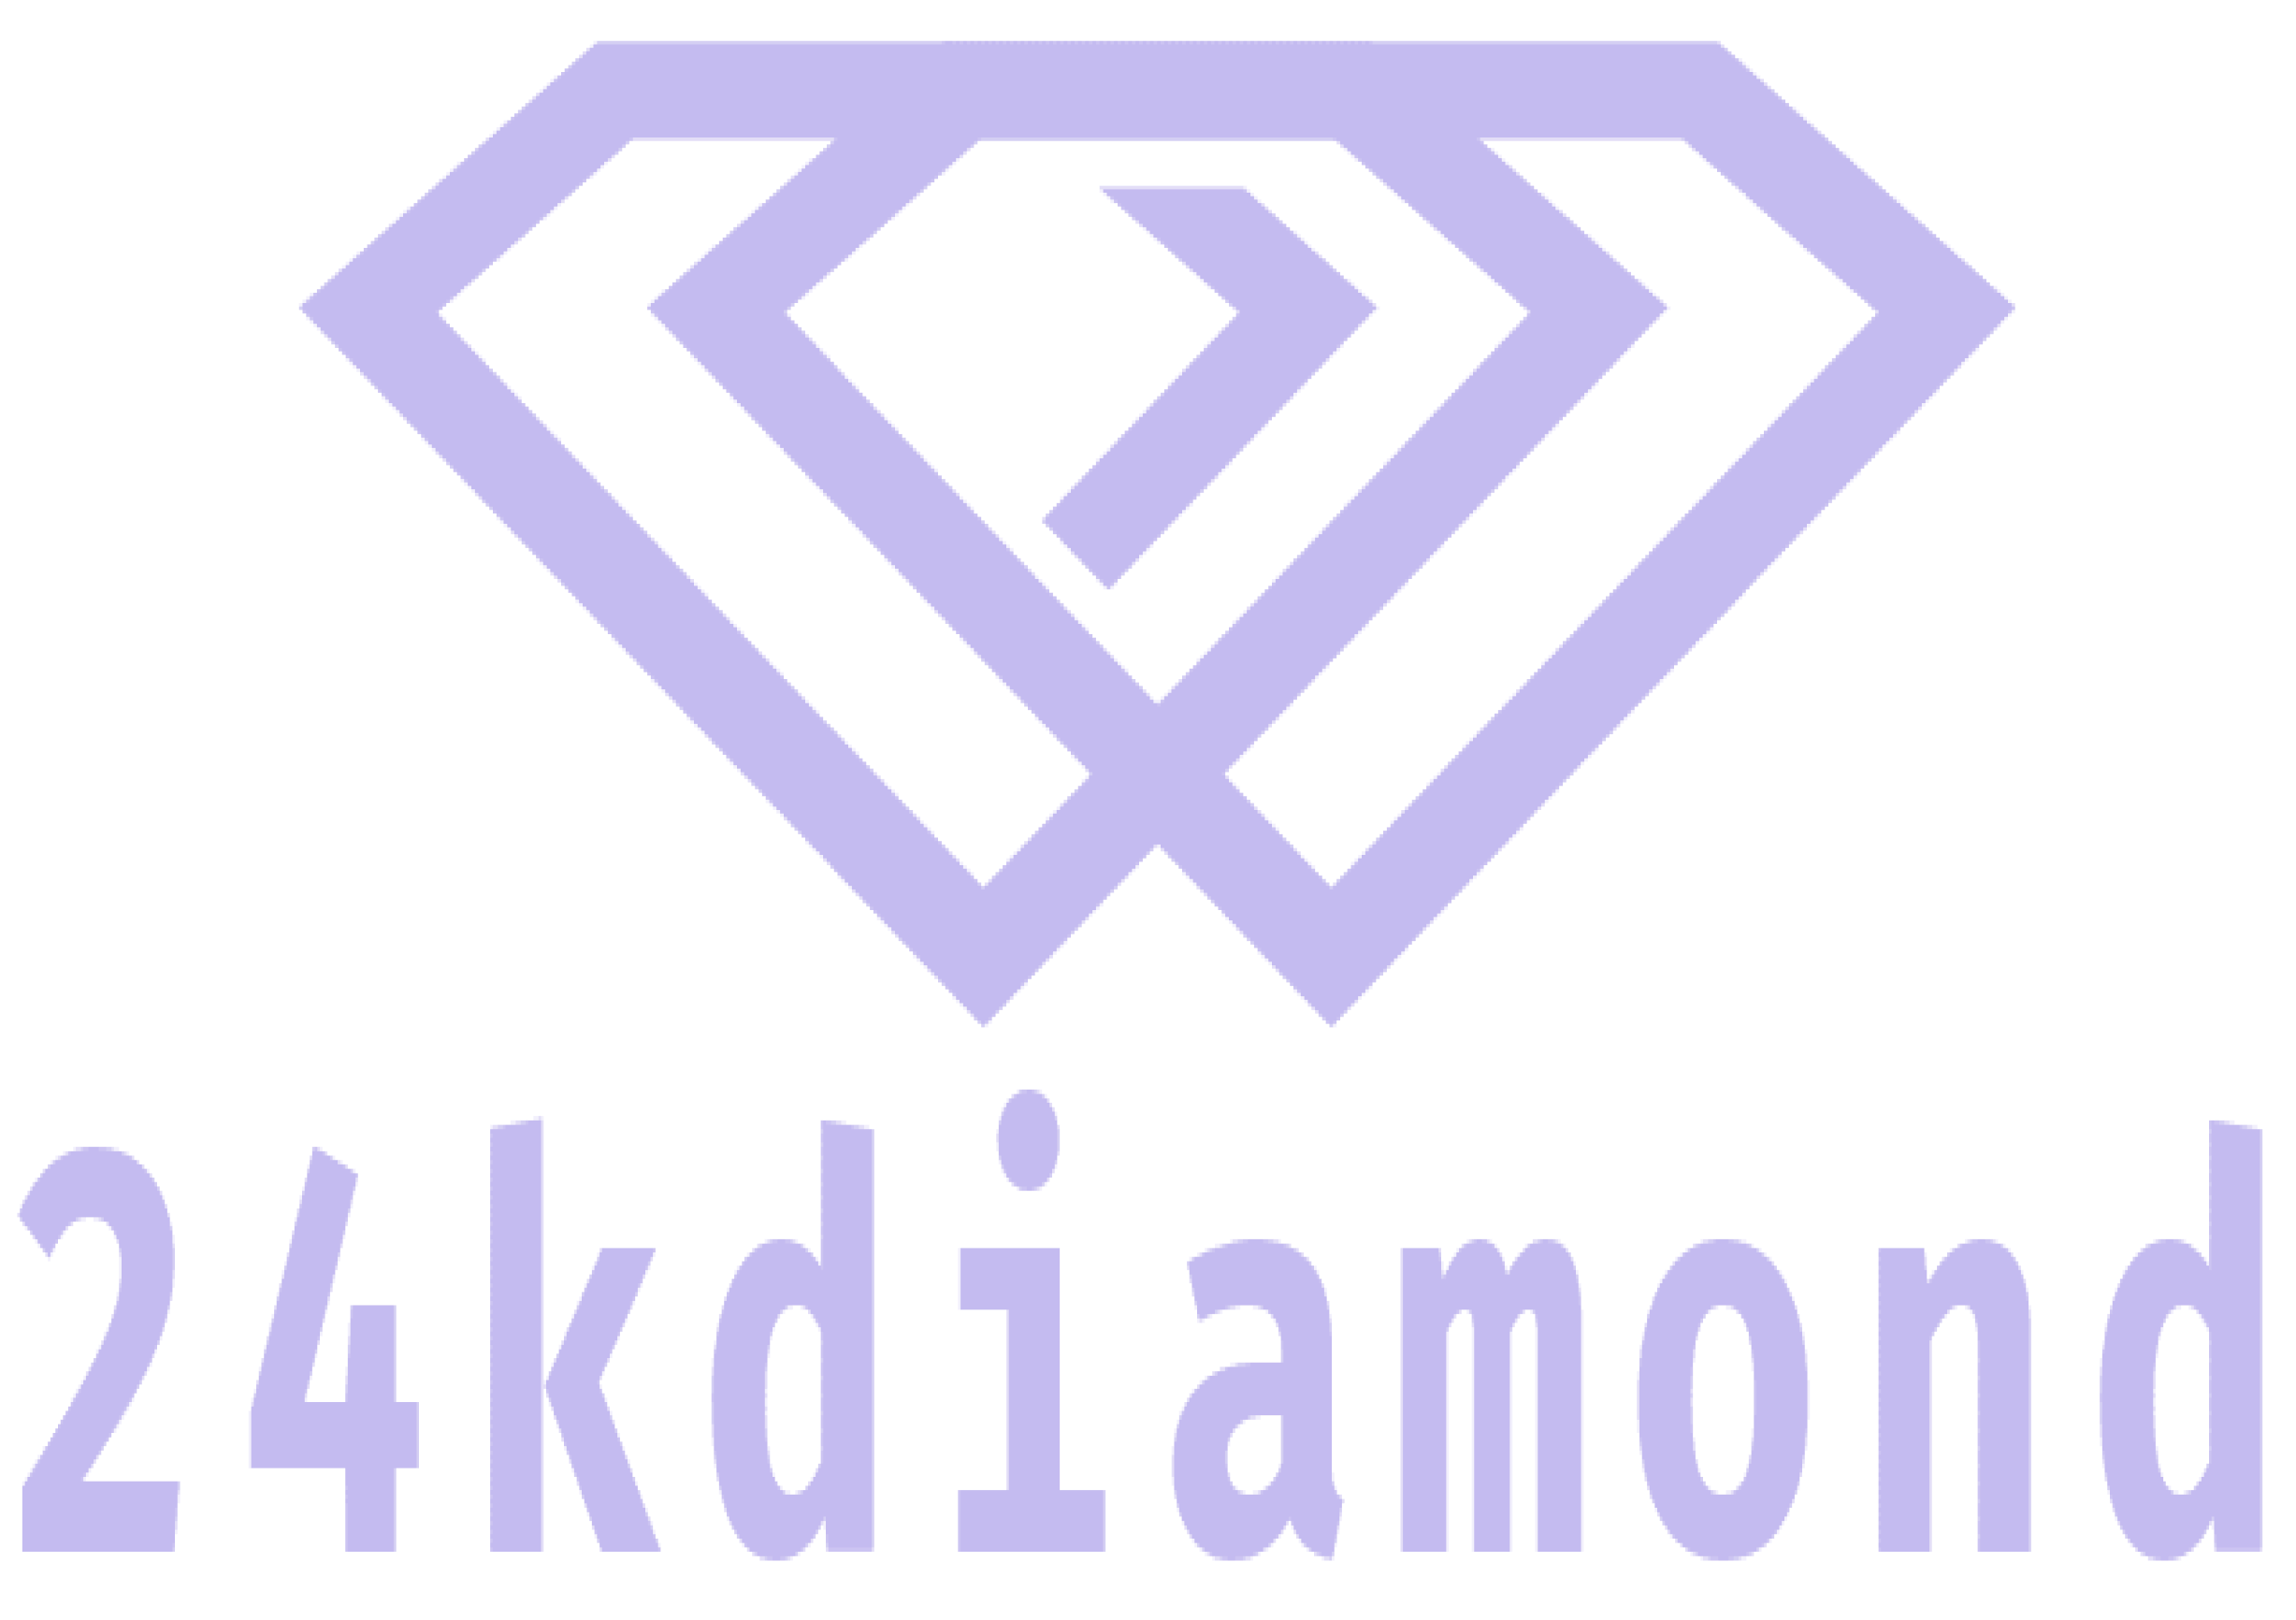 24kdiamond